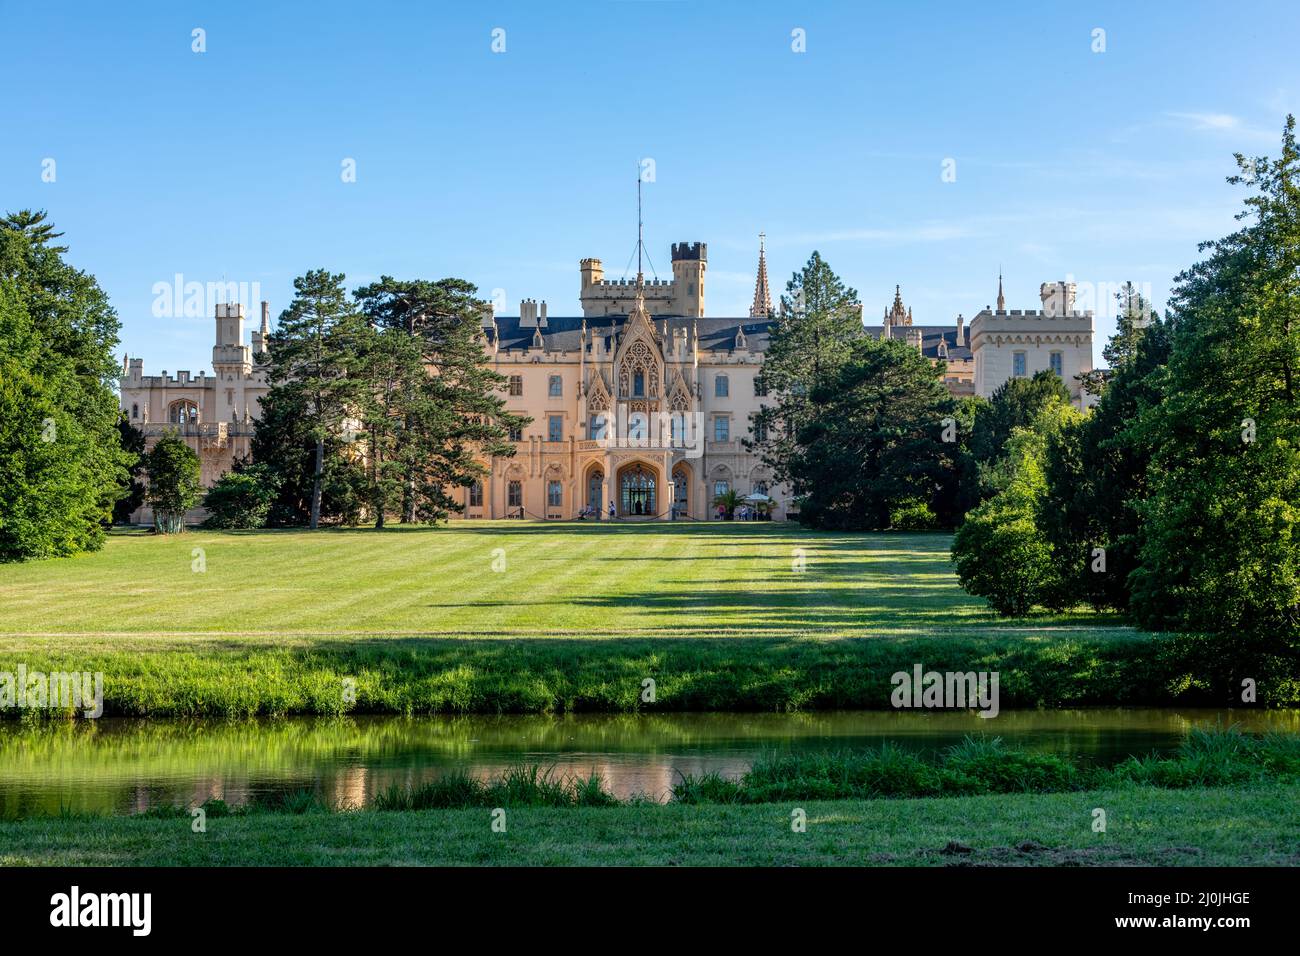 Lednice Chateau con hermosos jardines y parques en el soleado día de verano Foto de stock